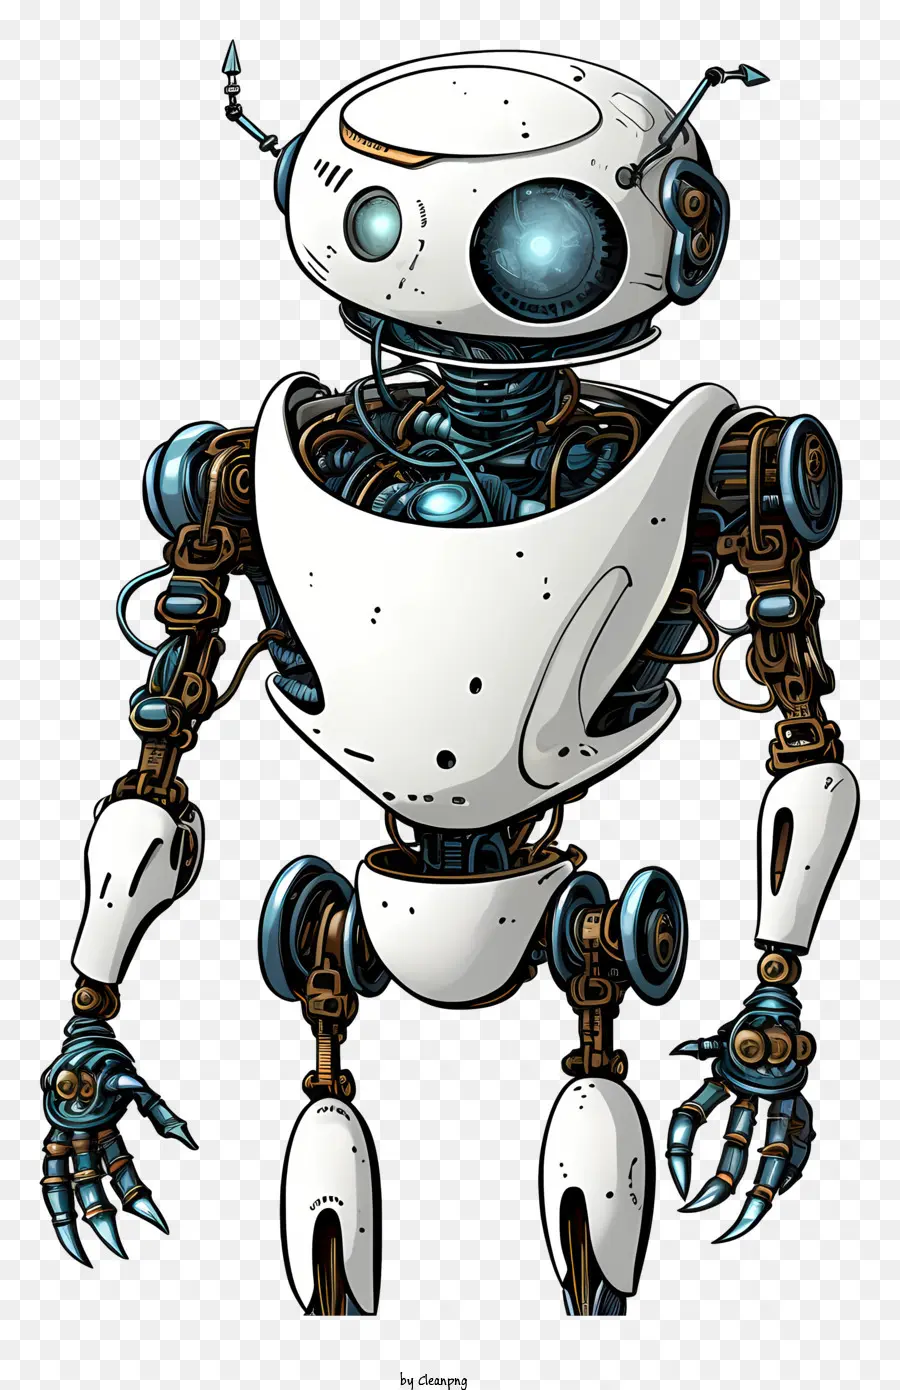 Robot hai chân bạc và hình trụ màu xanh lam tư thế trung tính - Một robot đứng trên hai chân, tư thế trung tính